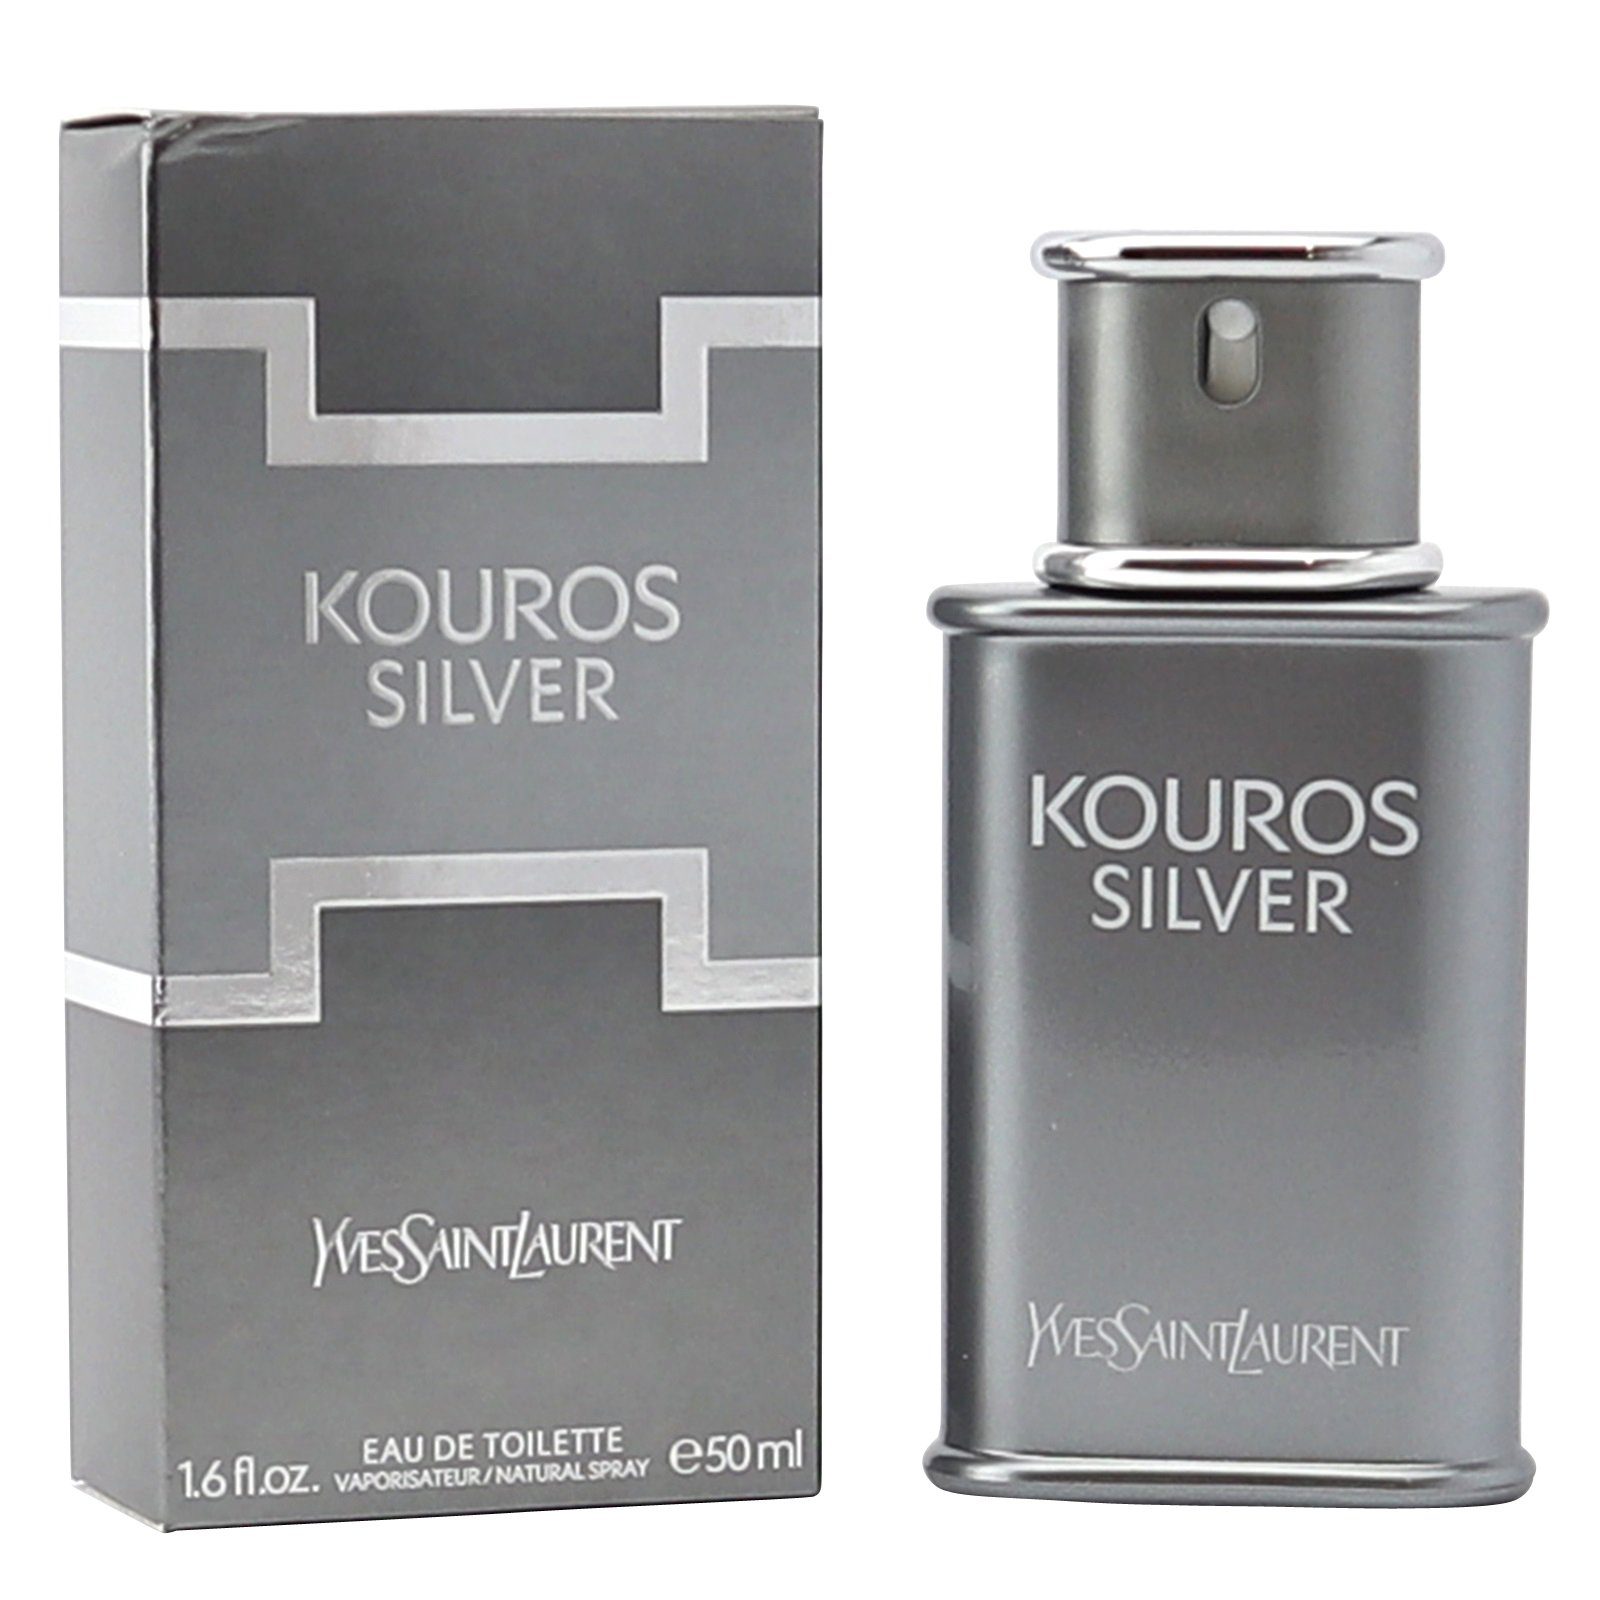 YVES SAINT LAURENT Eau de Toilette Yves Saint Laurent Kouros Silver Eau de Toilette Spray 50 ml YSL